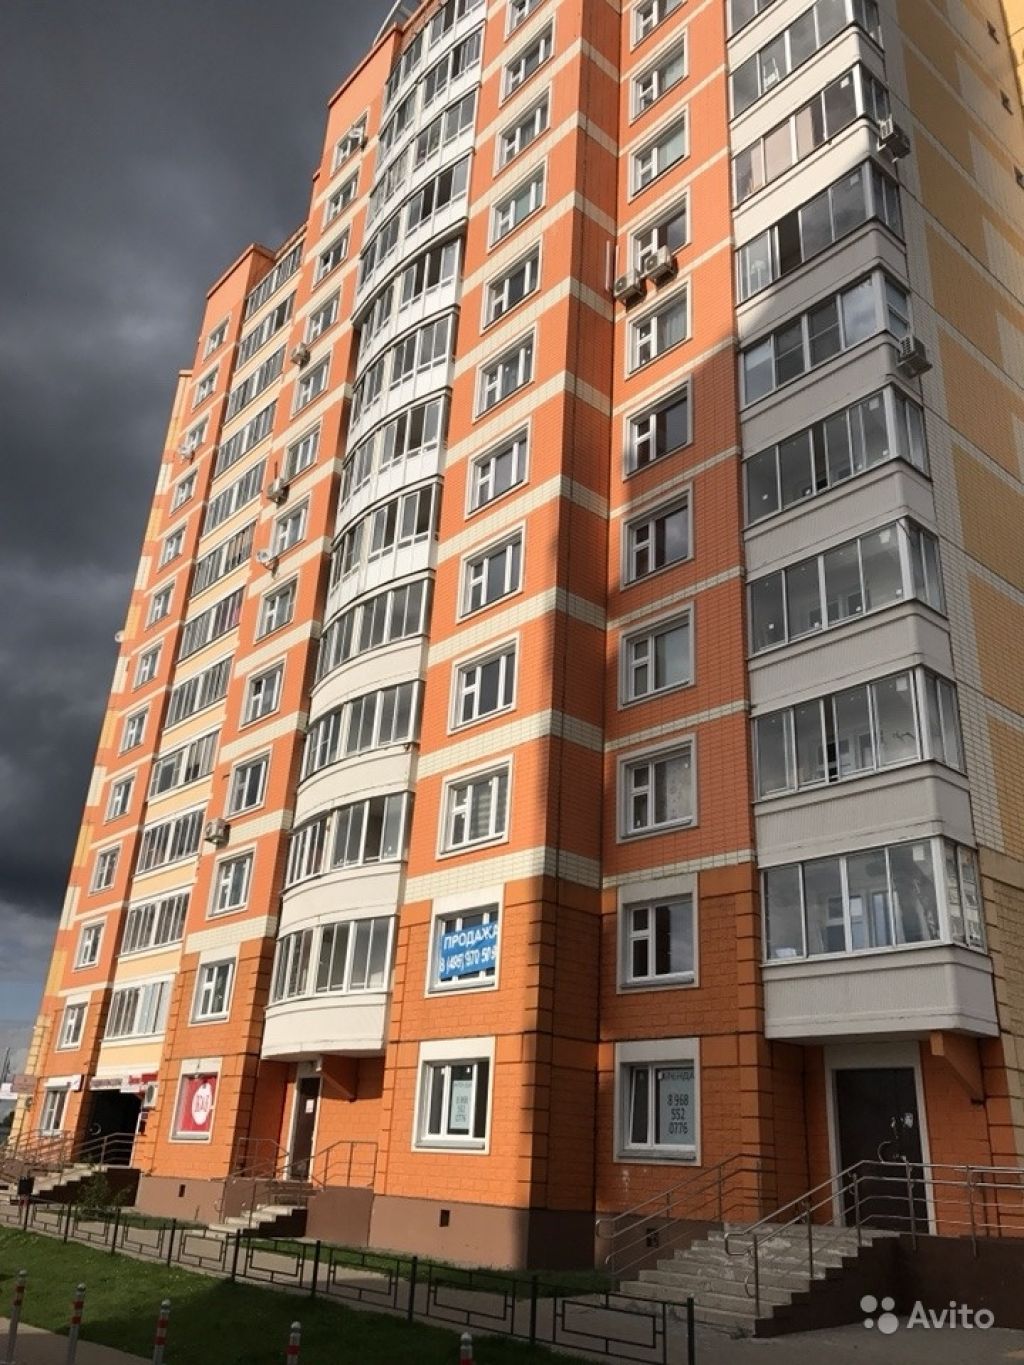 Продам квартиру 2-к квартира 59.8 м² на 3 этаже 17-этажного панельного дома в Москве. Фото 1